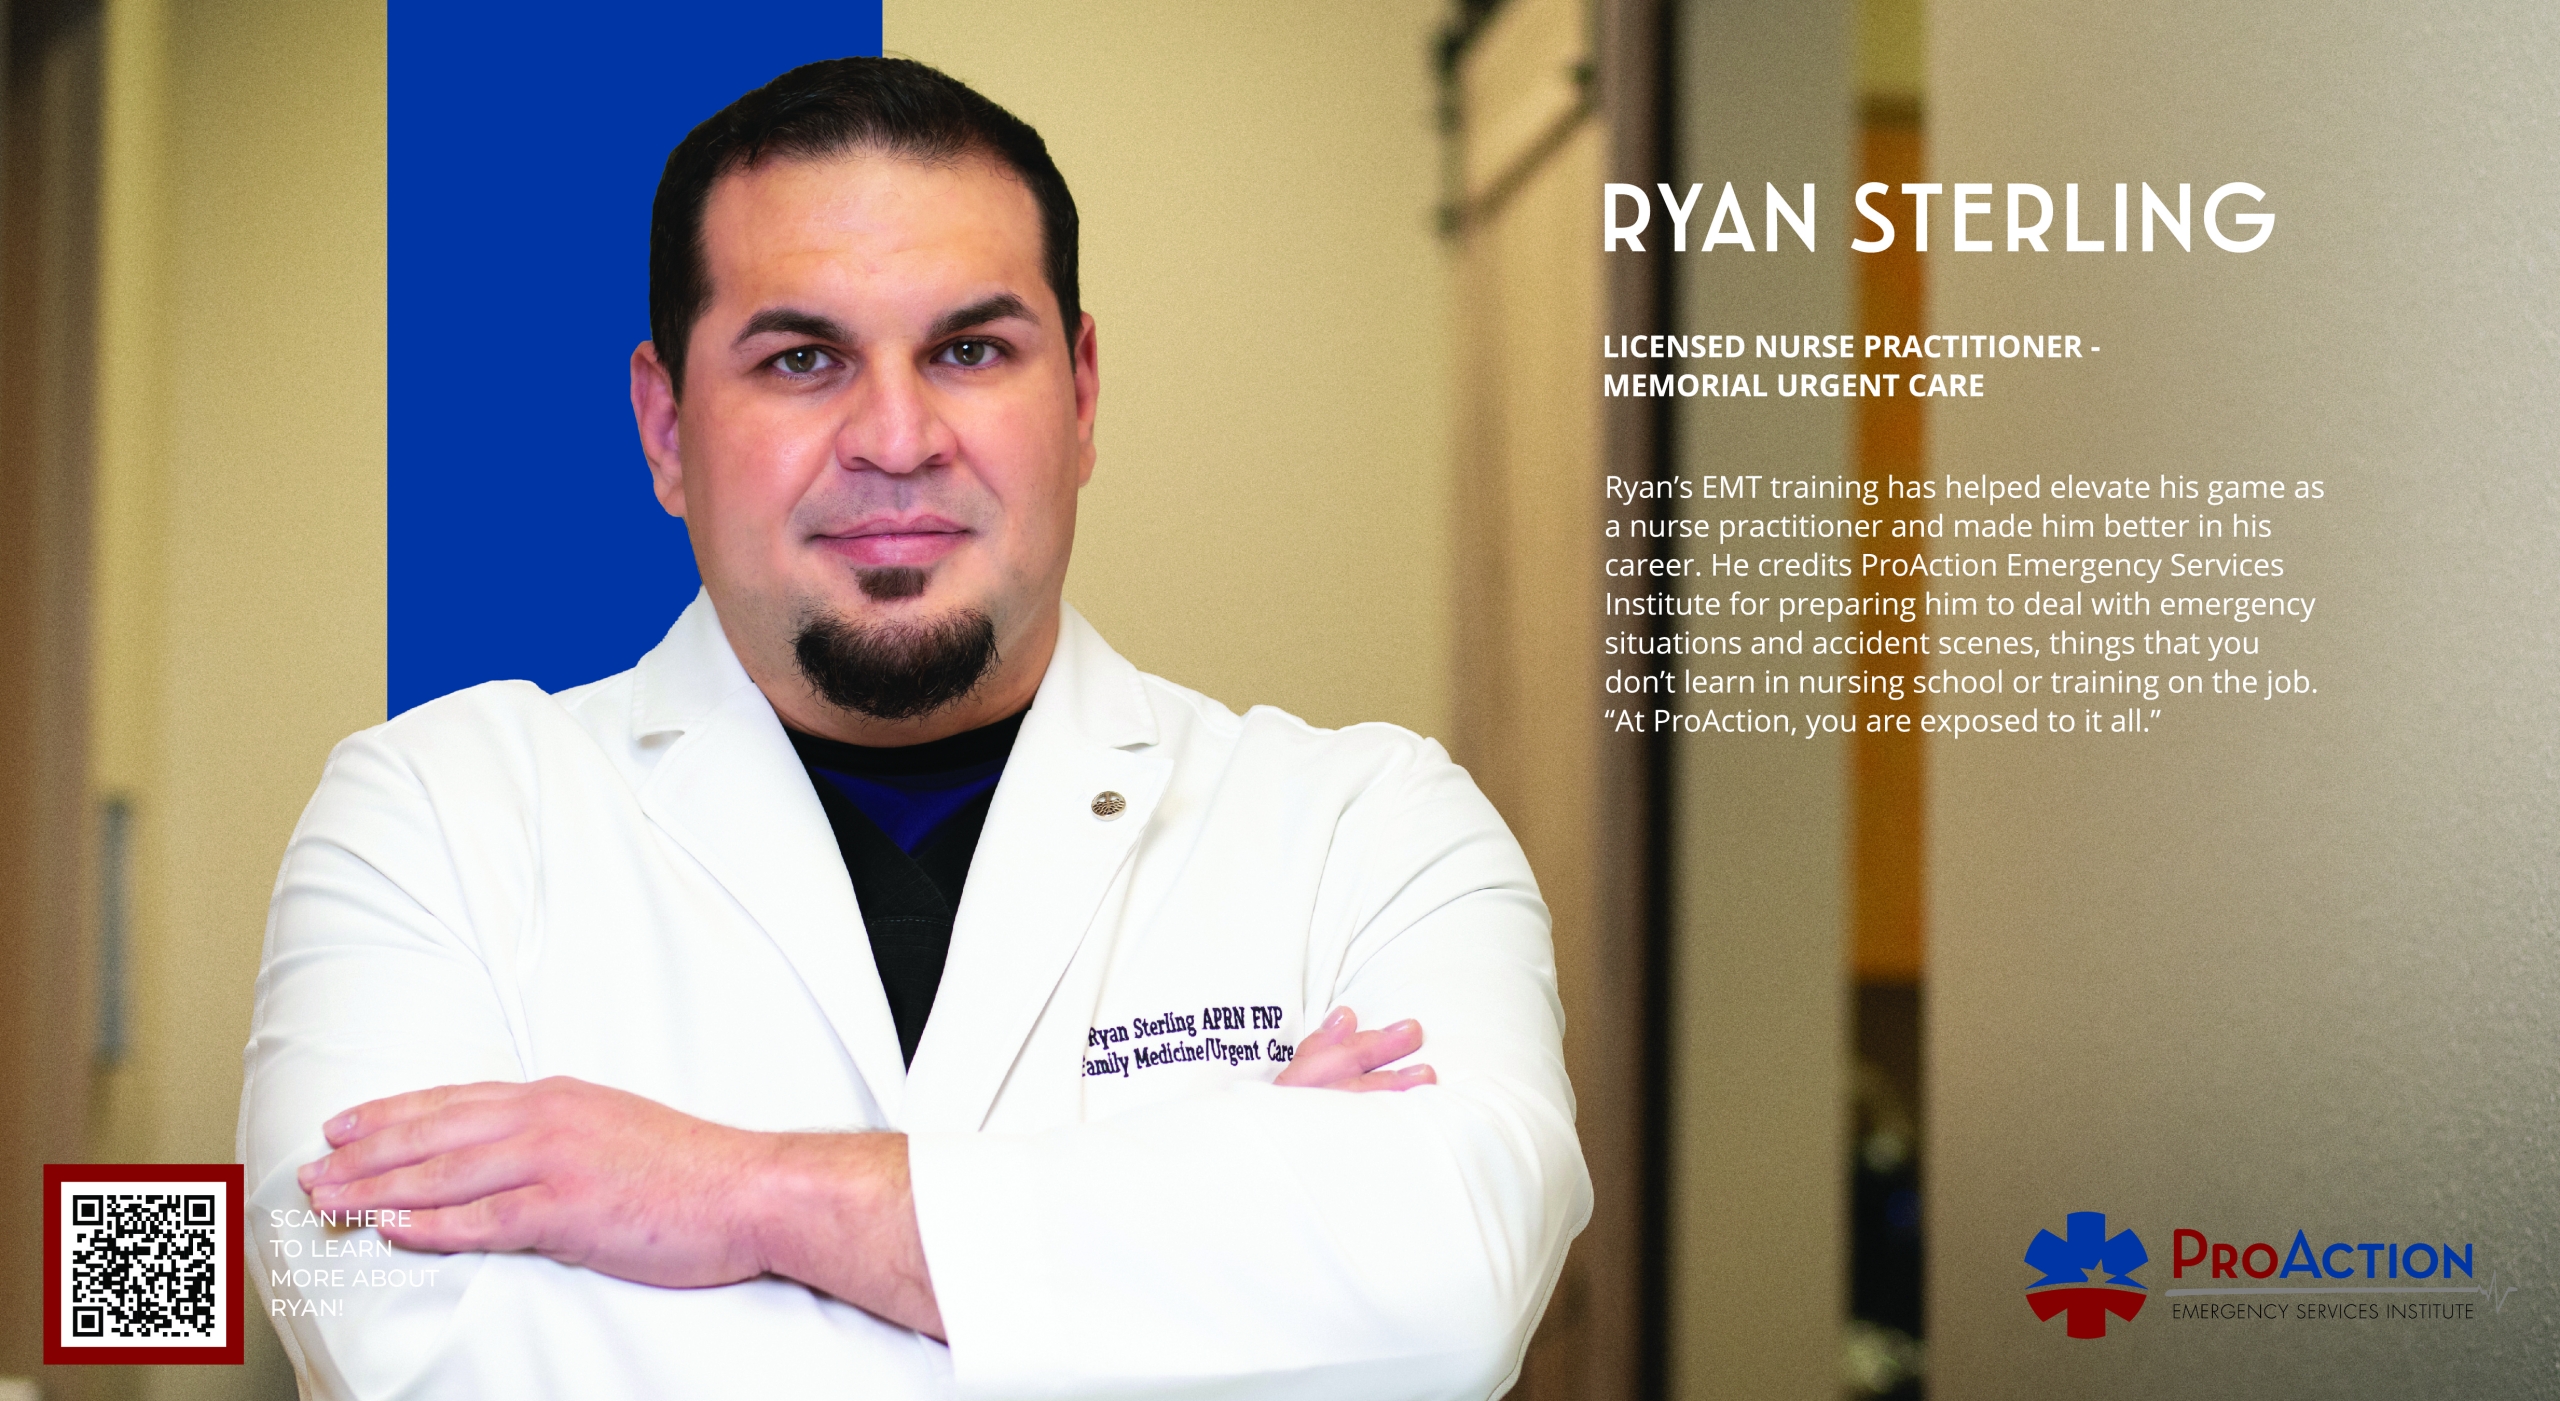 Meet Ryan - Licensed Nurse Practitioner